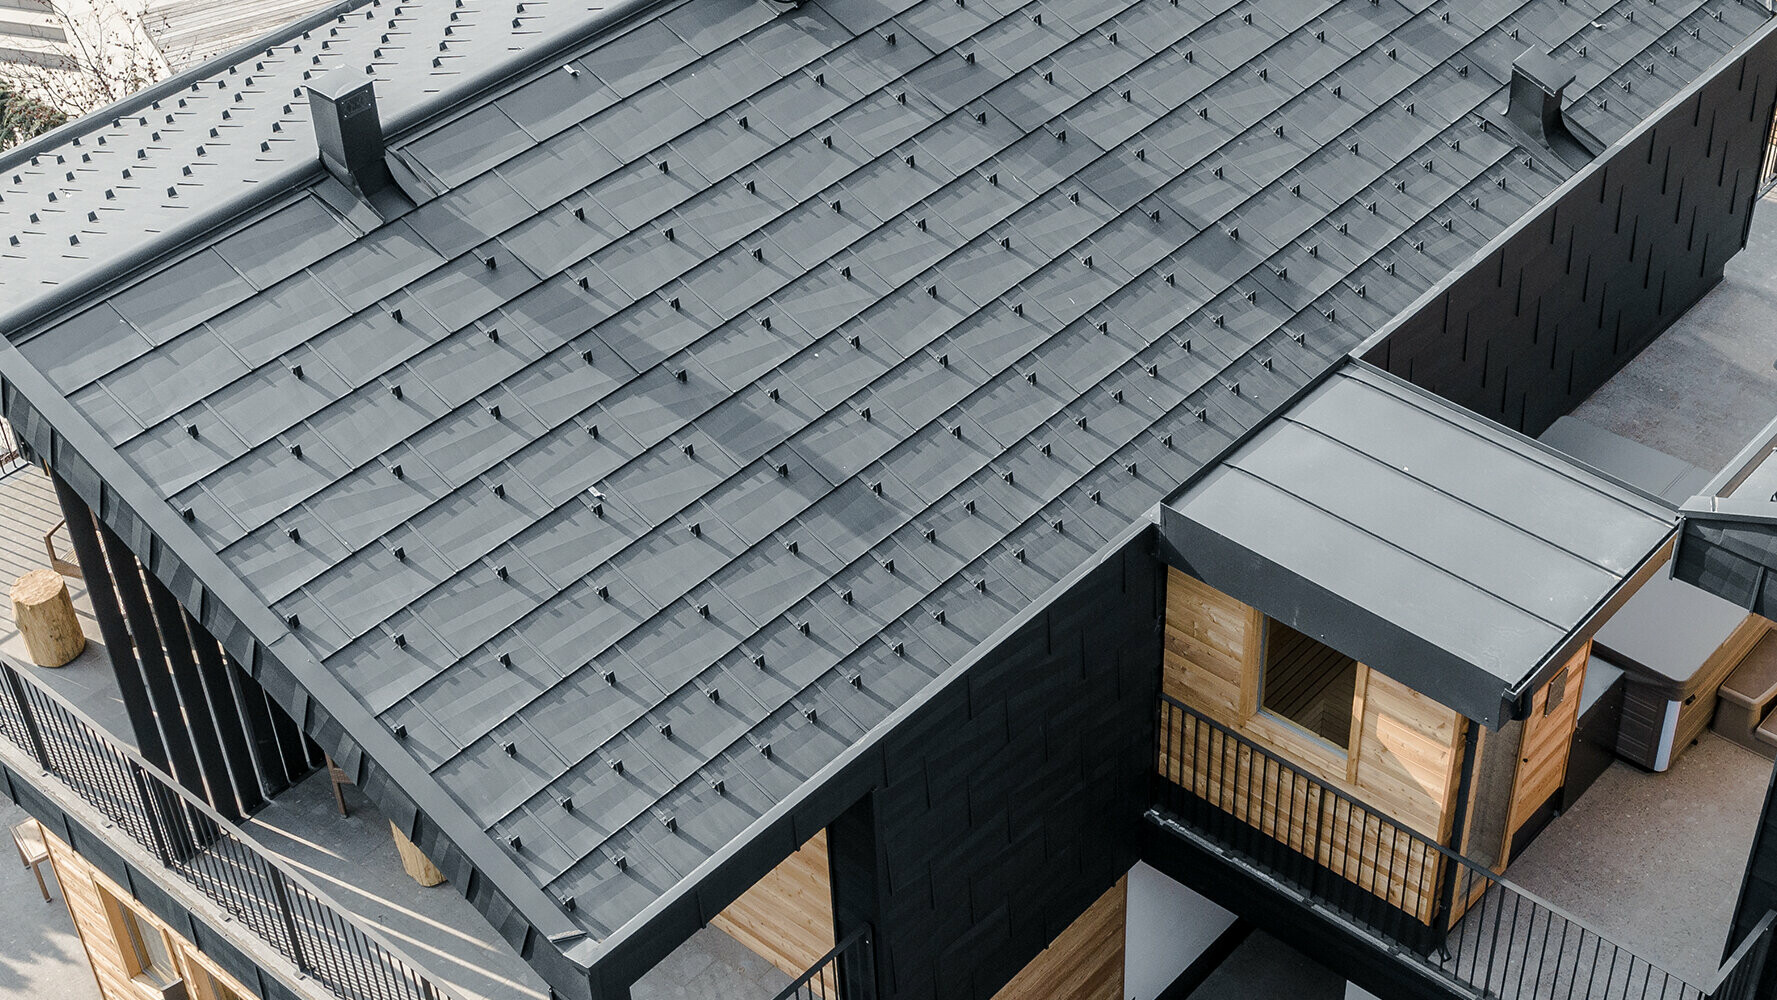 Neue Apartments mit PREFA Dachpaneel und Fassadenpaneel FX.12 in P.10 Anthrazit und Holz verkleidet.